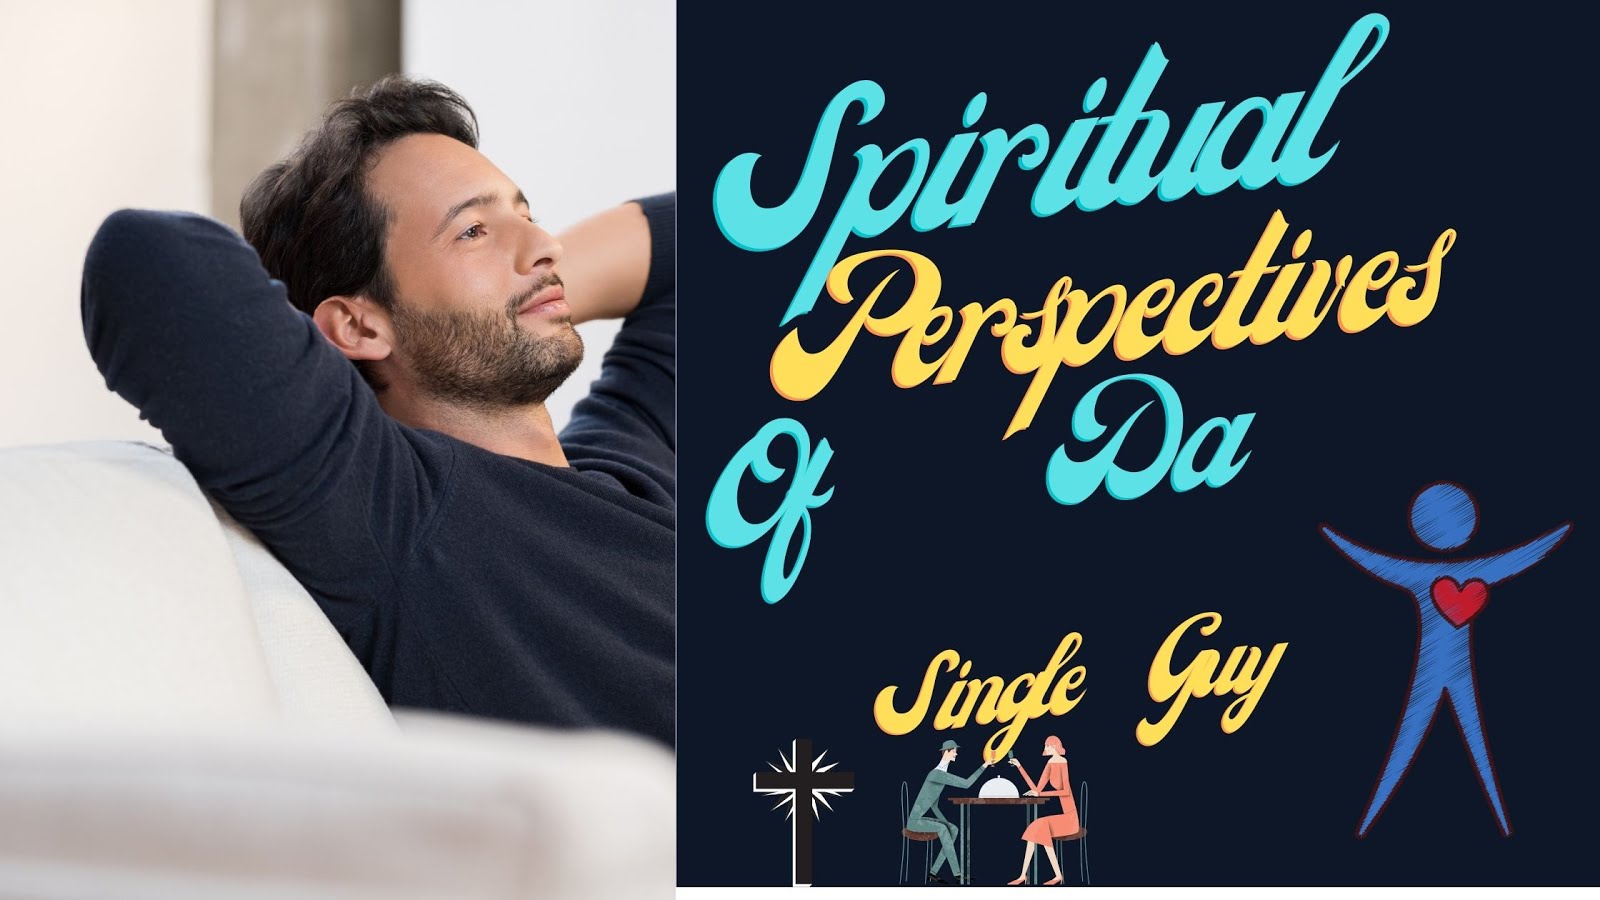 Spiritual Perspectives Of Da Single Guy